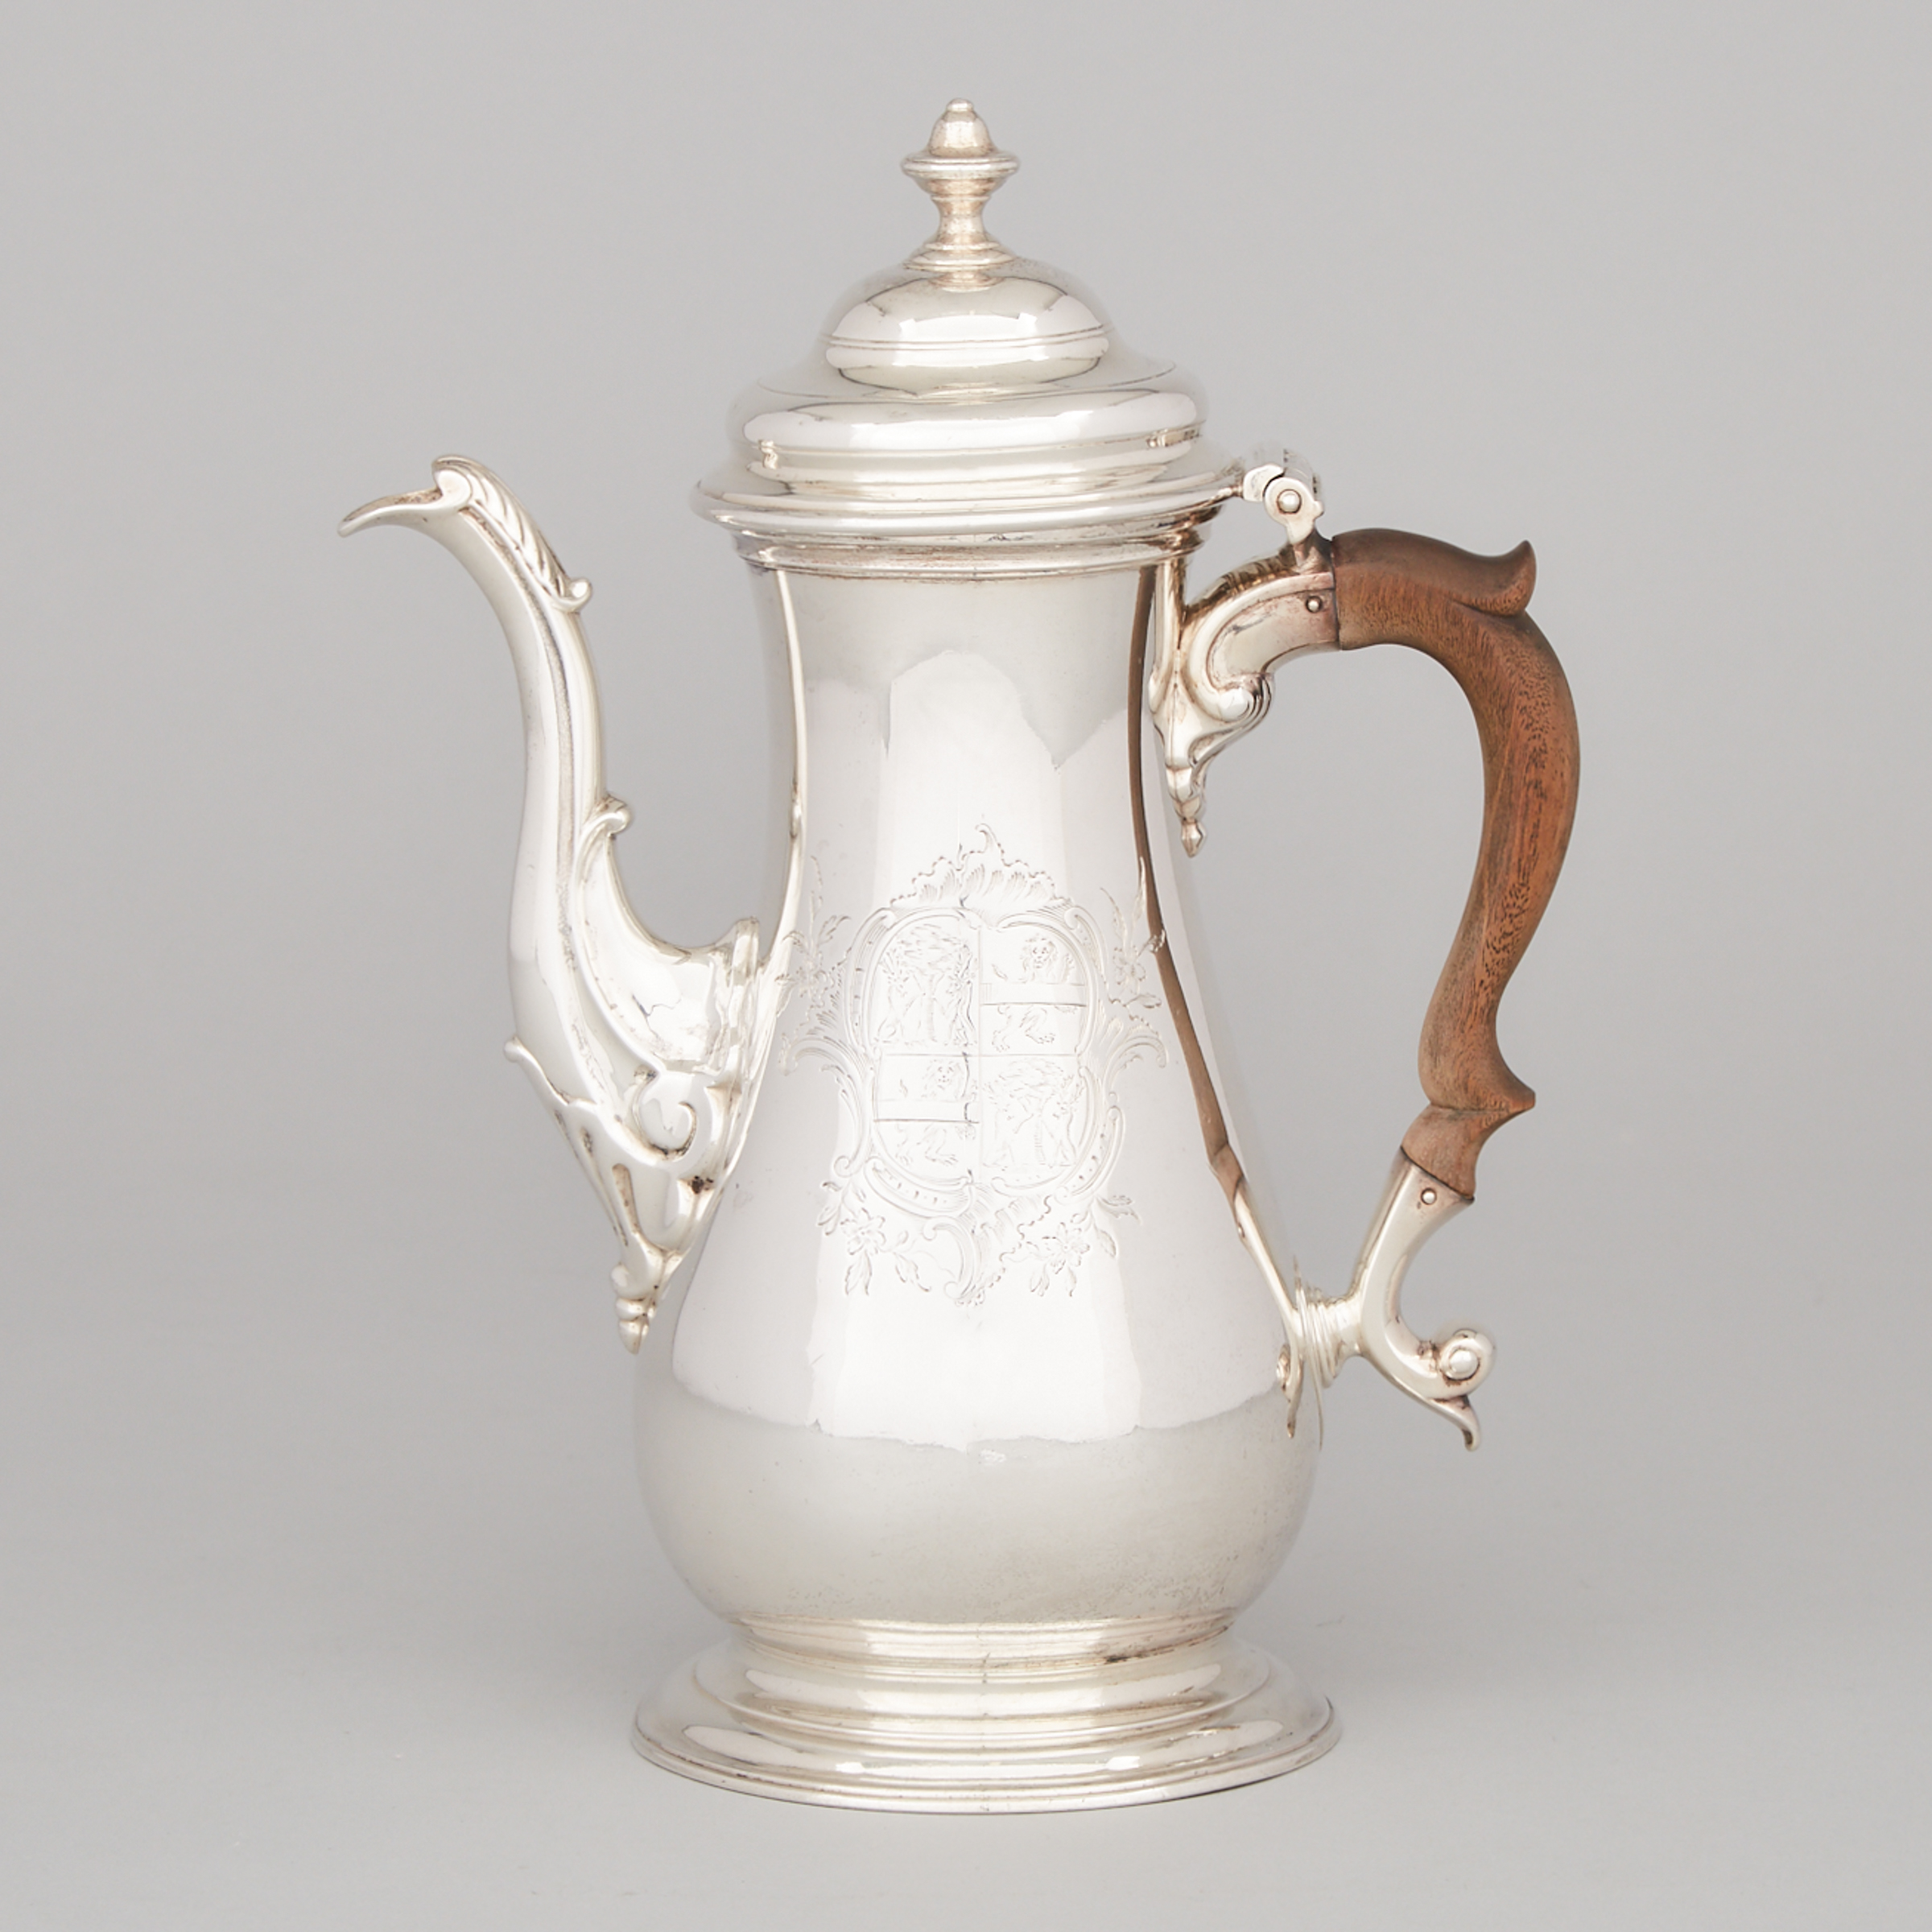 George II Silver Coffee Pot, John Payne, London, 1759